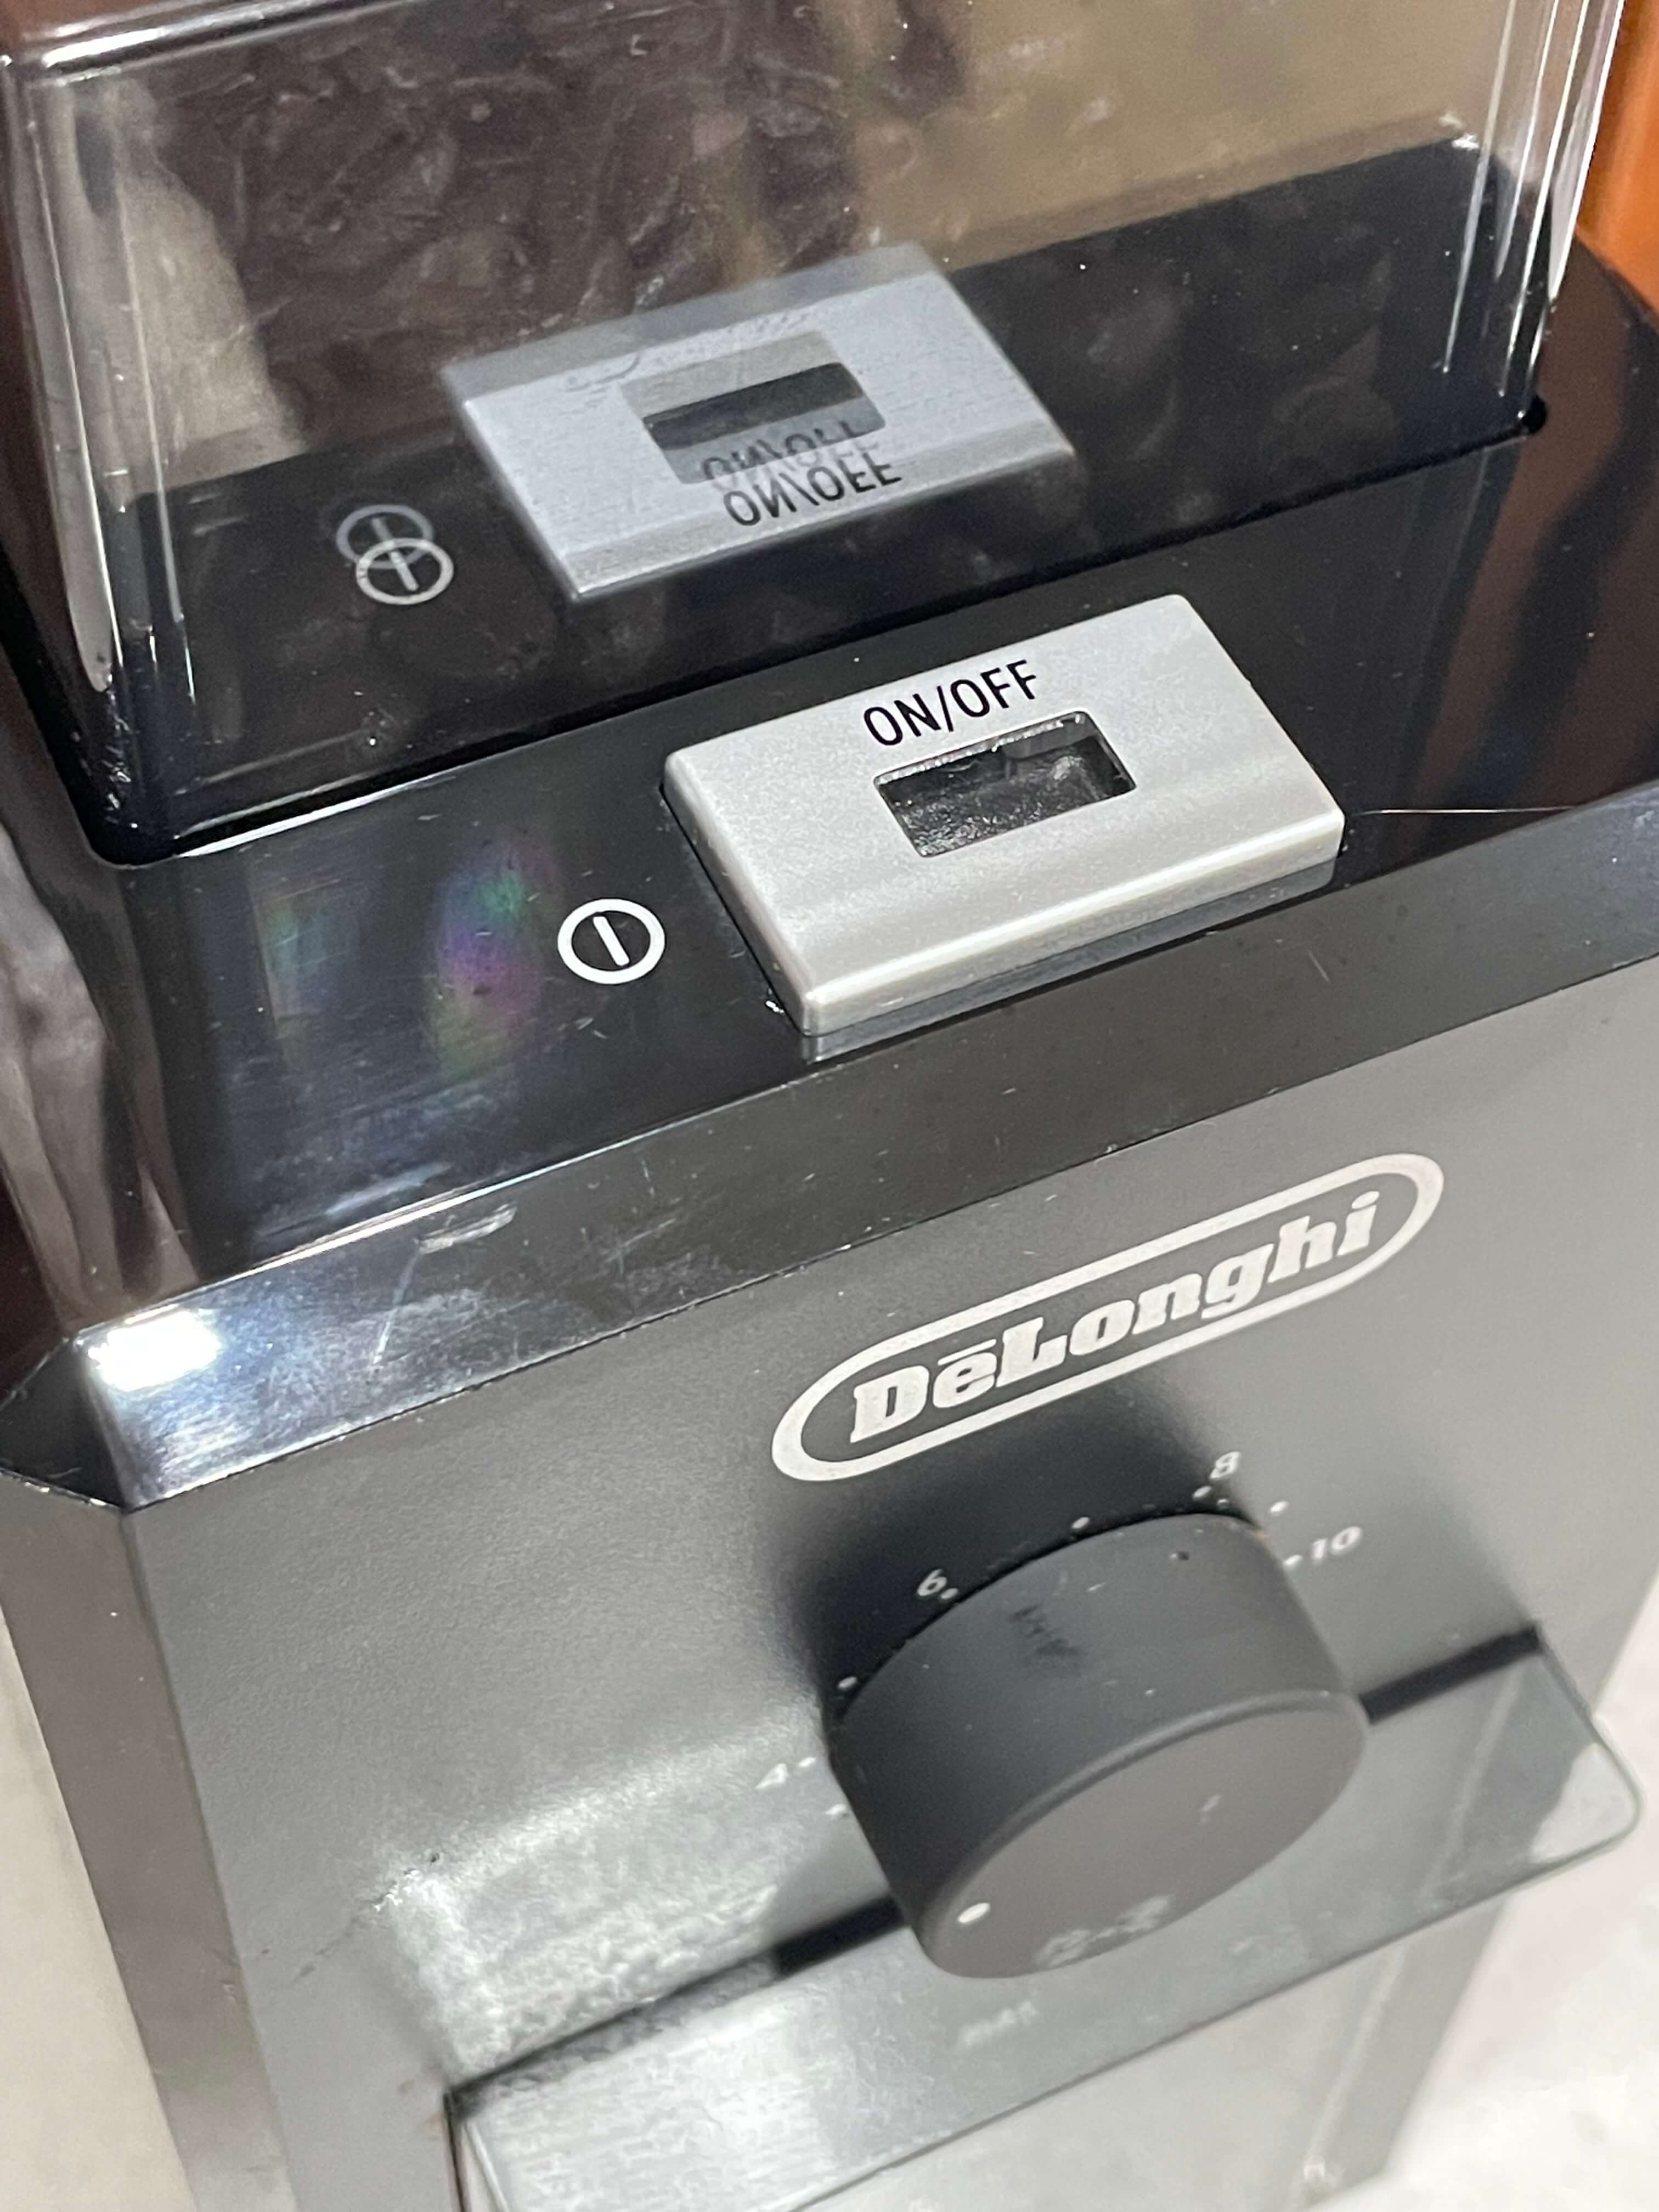 드롱기 커피 그라인더 Kg79 구매 후기